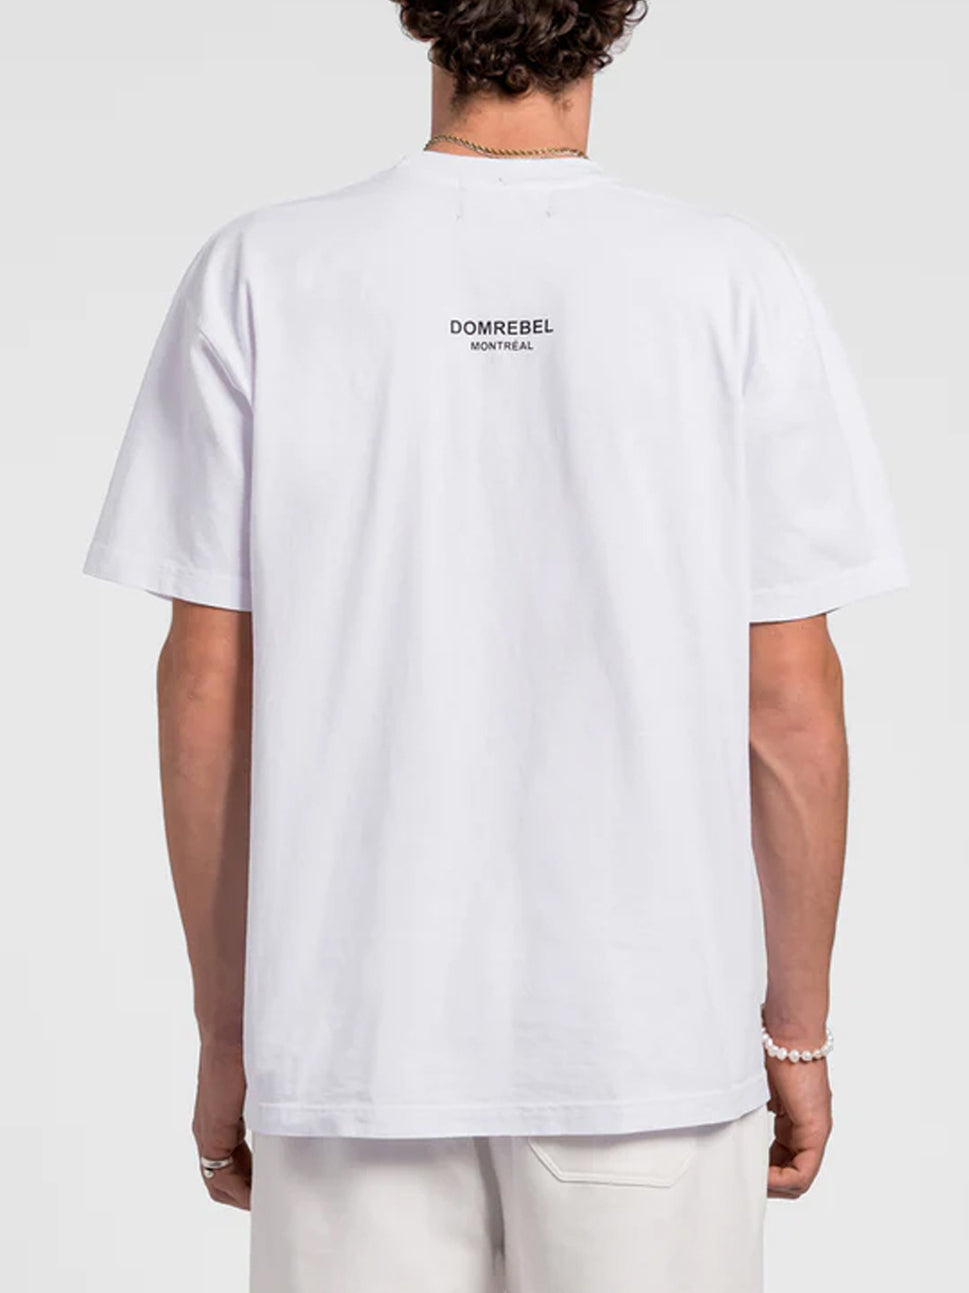 Domrebel Men's White Snap T Shirt